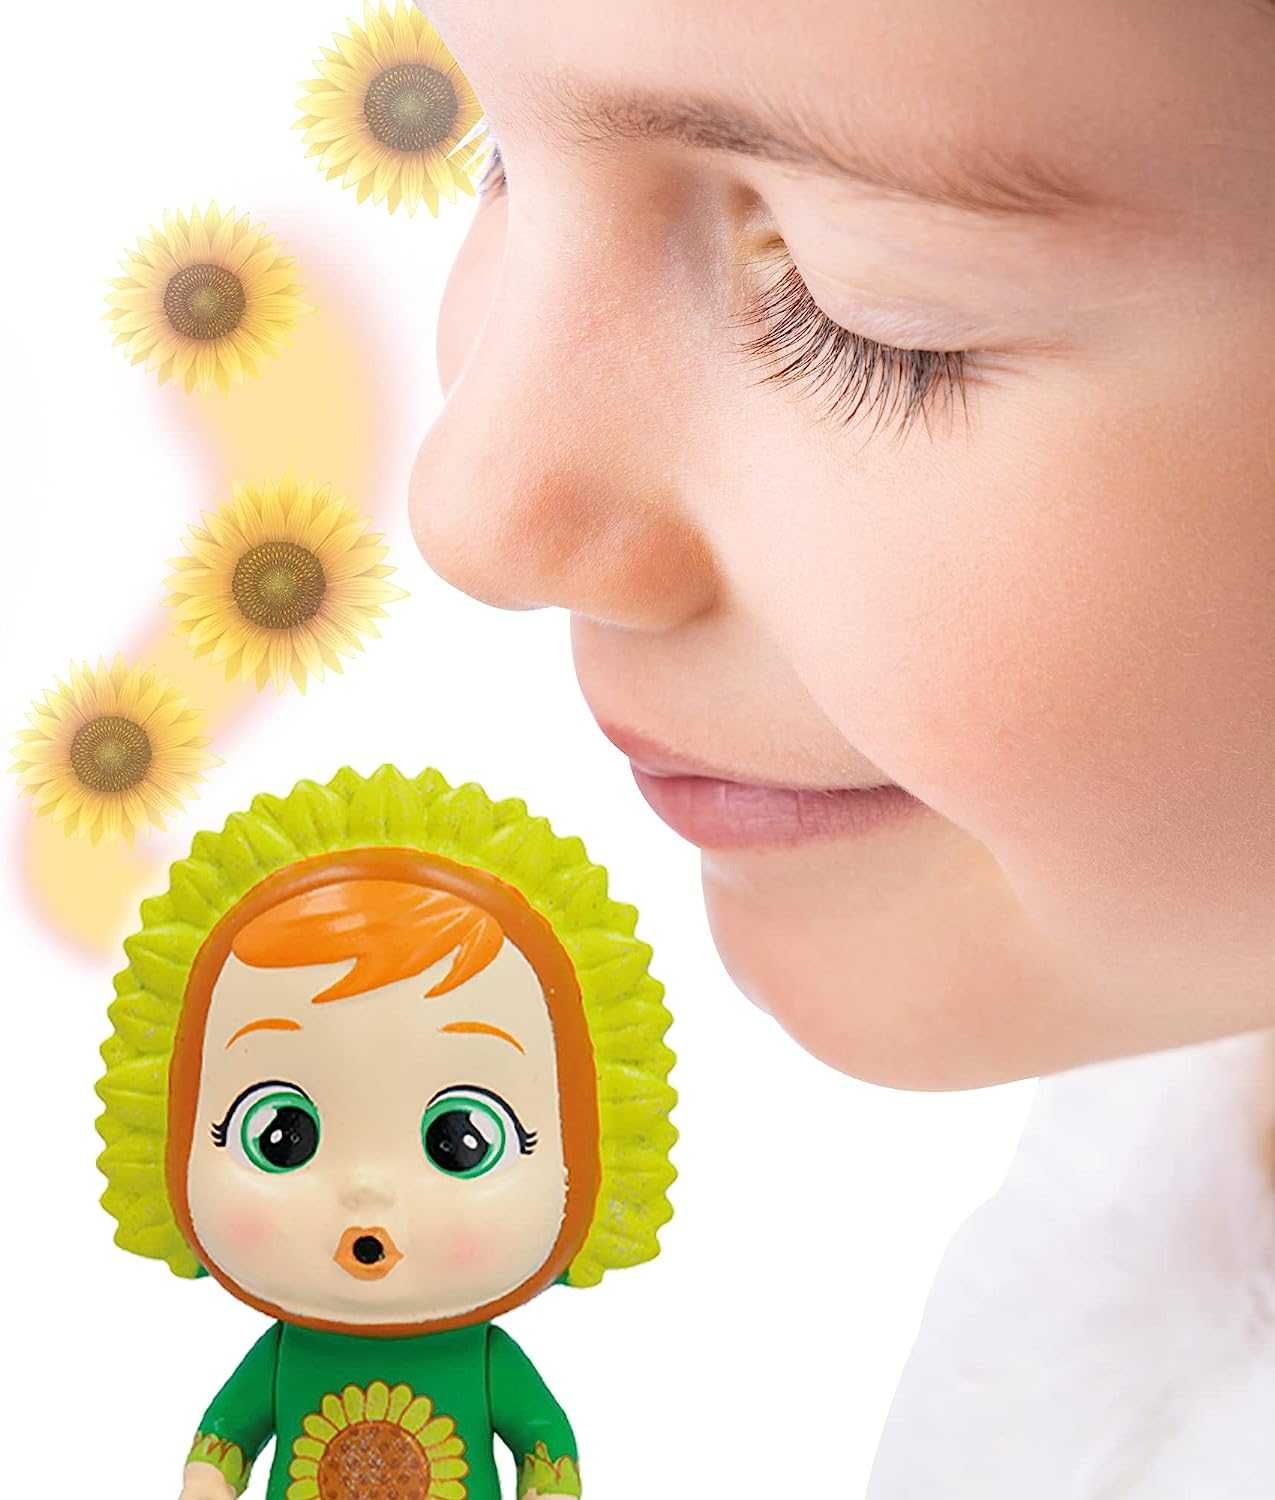 ОРИГИНАЛ! Кукла Cry Babies Волшебные слезы Счастливые цветы 9 сюрприз